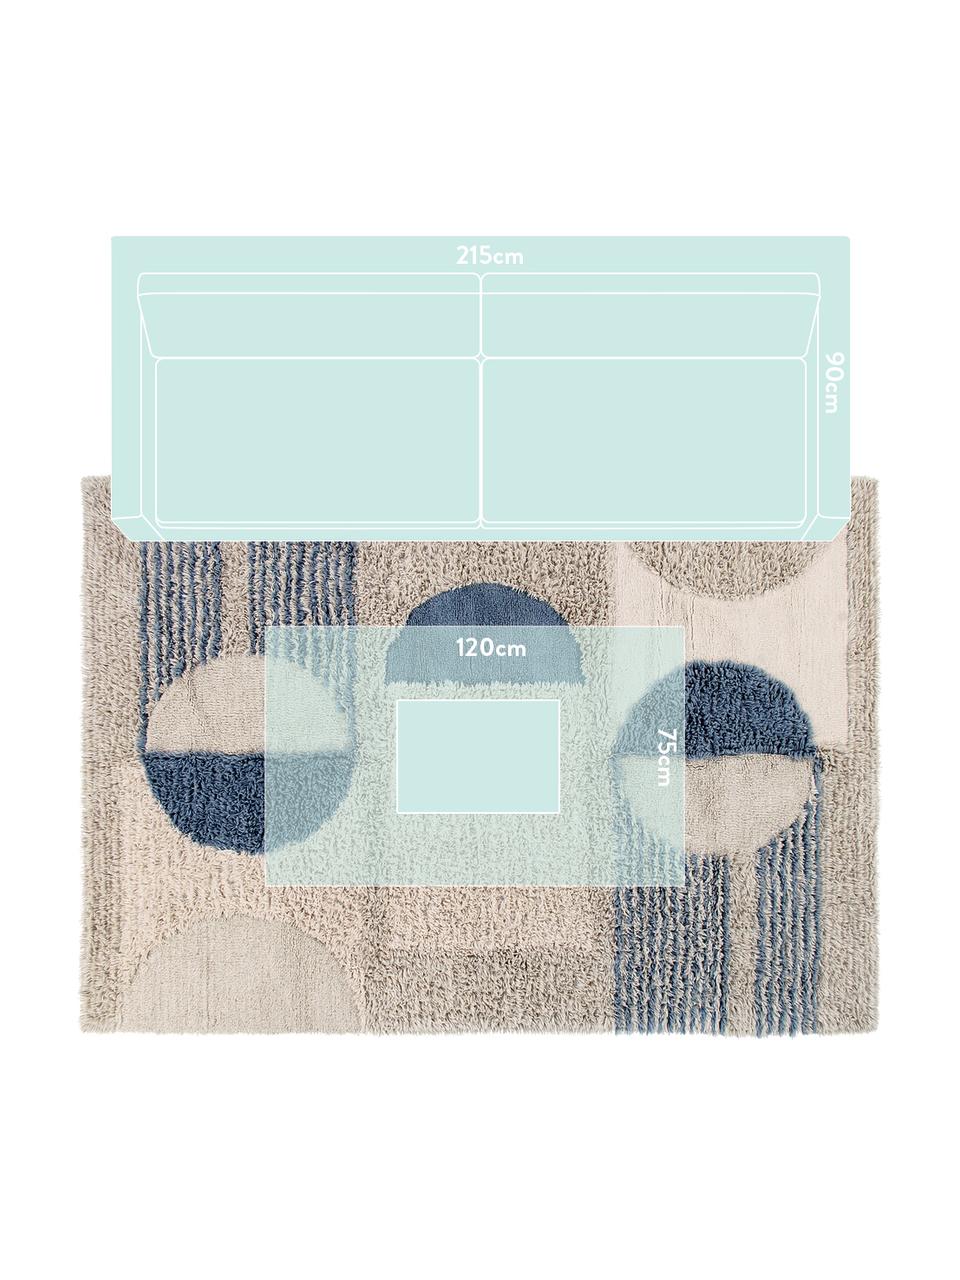 Tappeto in lana lavabile con motivo geometrico Woolable Sunray, Retro: cotone riciclato Nel caso, Beige, color sabbia, marrone, blu scuro, Larg. 170 x Lung. 240 cm (taglia M)